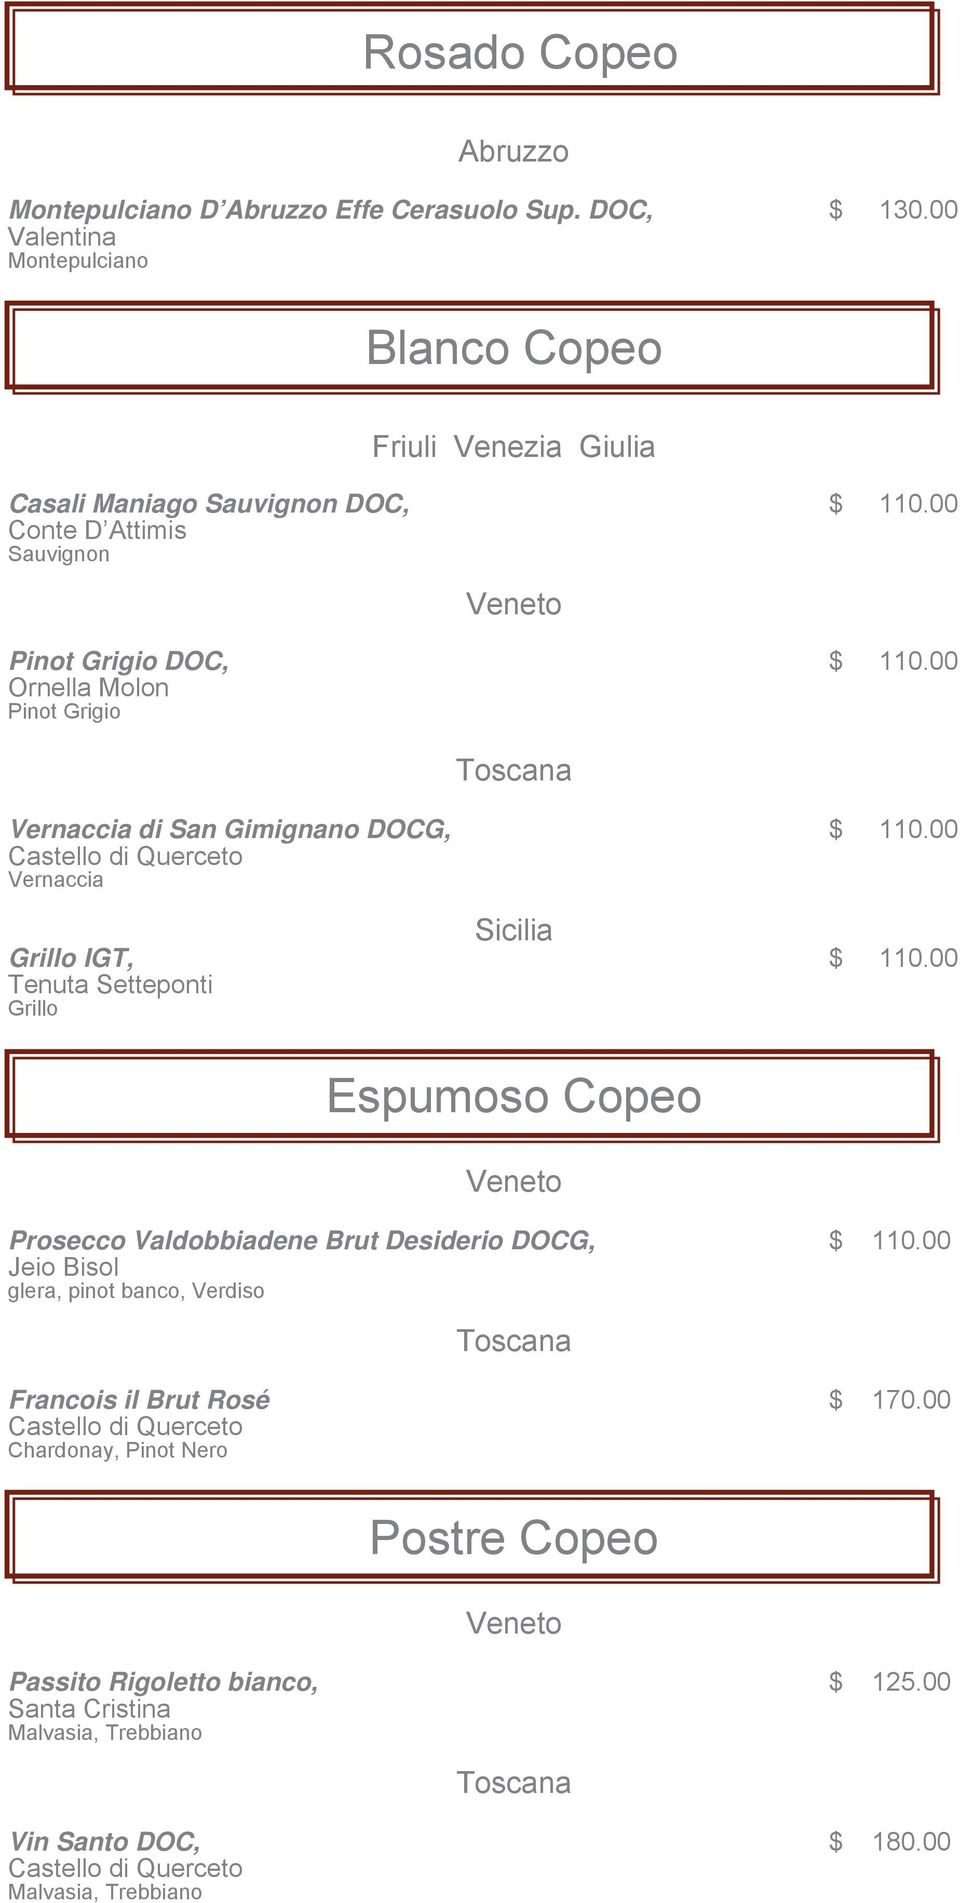 00 Ornella Molon Pinot Grigio Vernaccia di San Gimignano DOCG, $ 110.00 Vernaccia Sicilia Grillo IGT, $ 110.